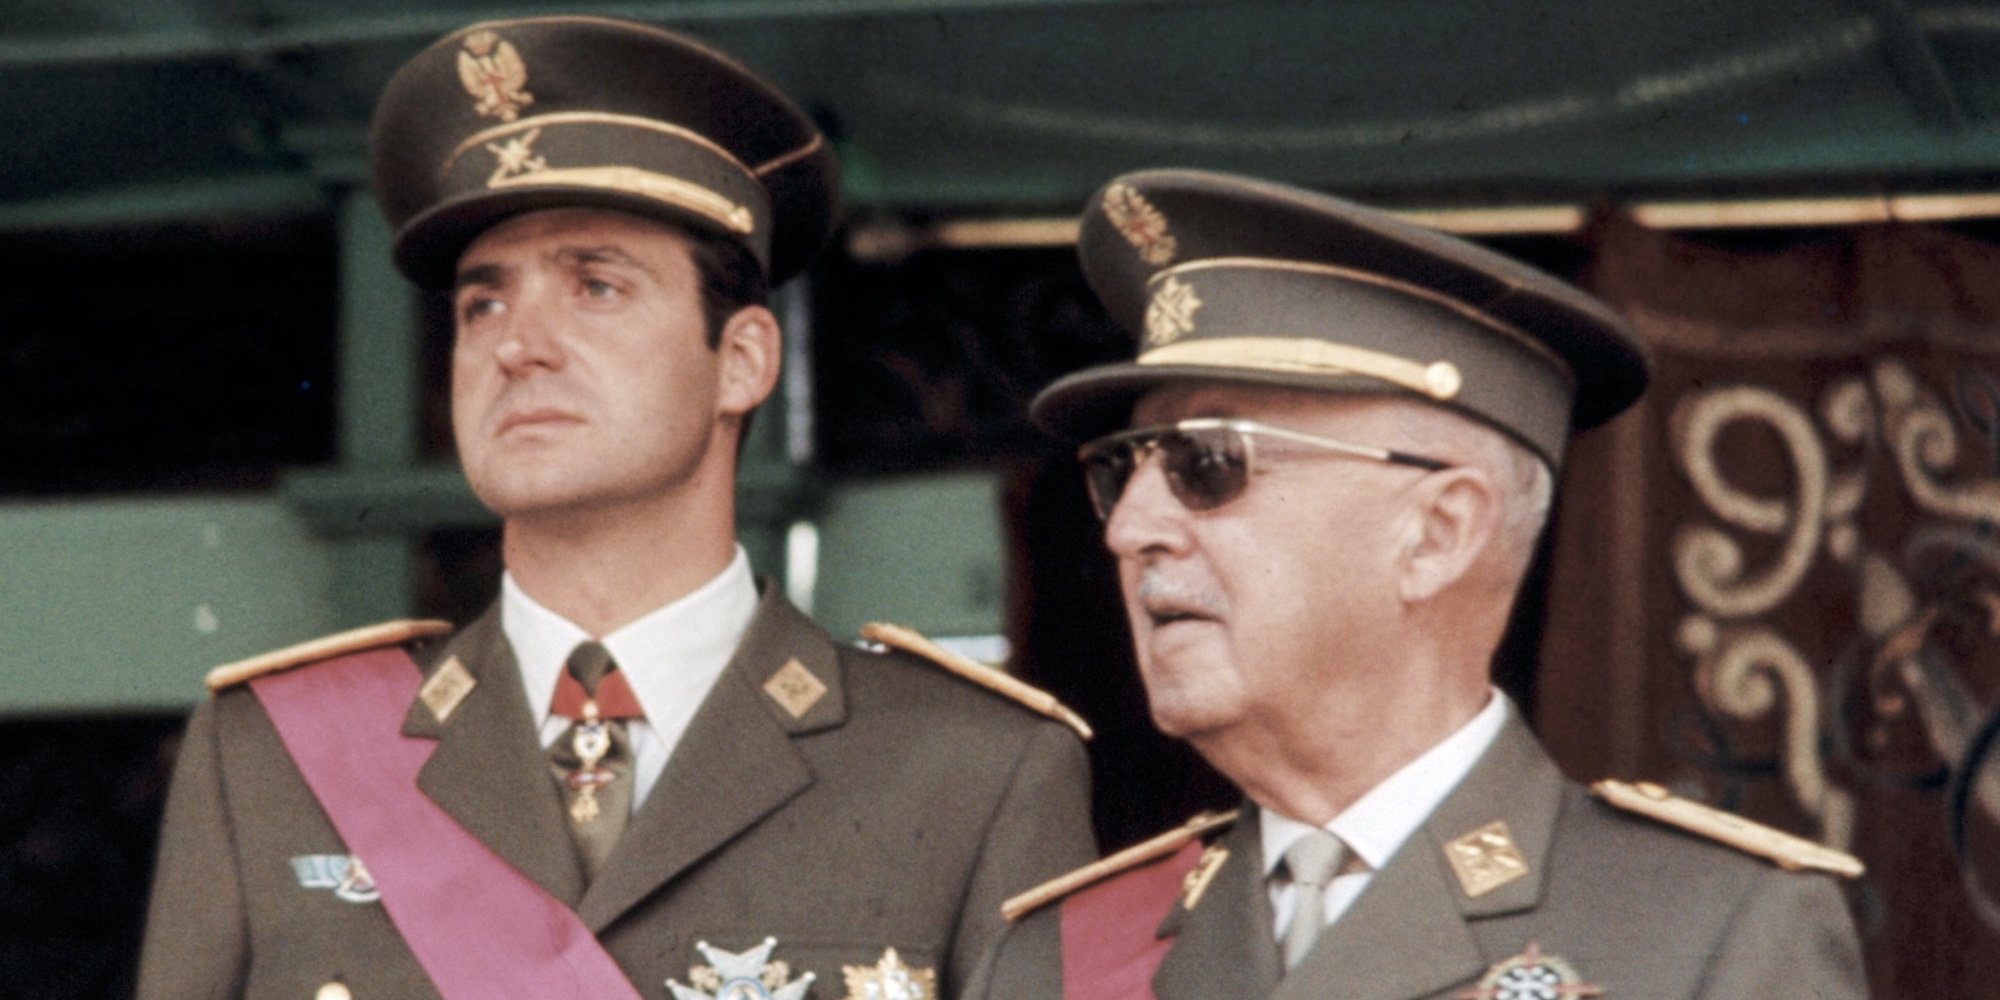 La opinión del Rey Juan Carlos sobre la exhumación de Franco y la broma sobre lo que le puede pasar a él